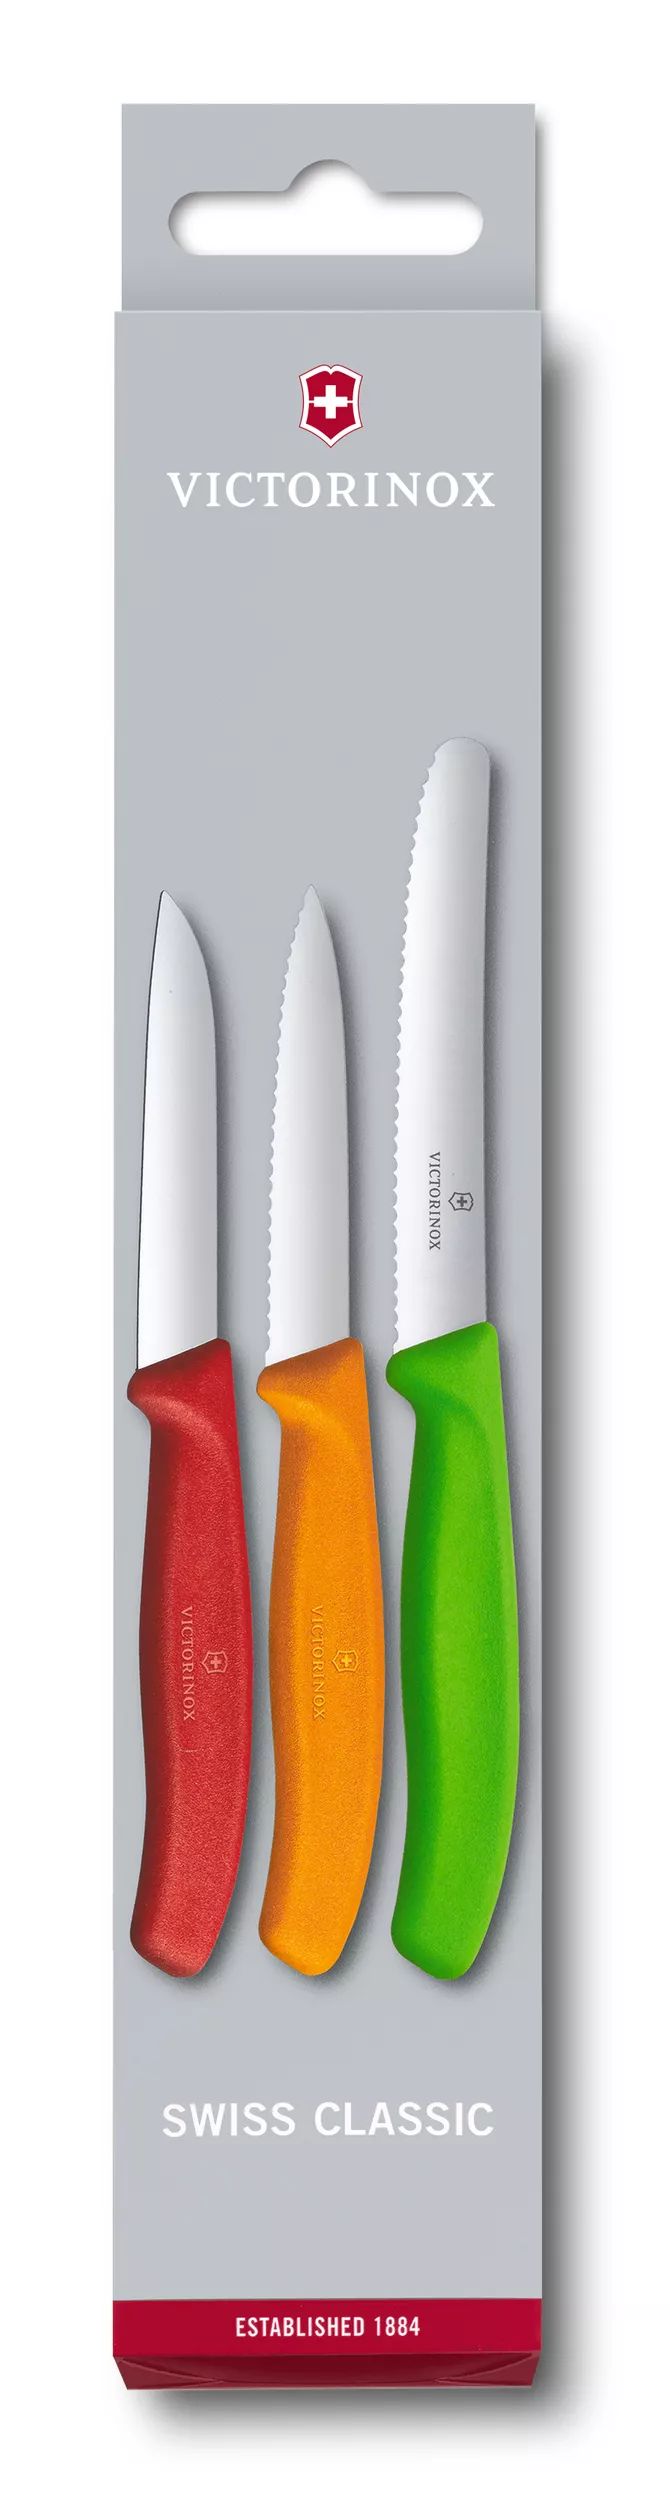 Conjunto de facas para descascar Swiss Classic, 3 peças-6.7116.32